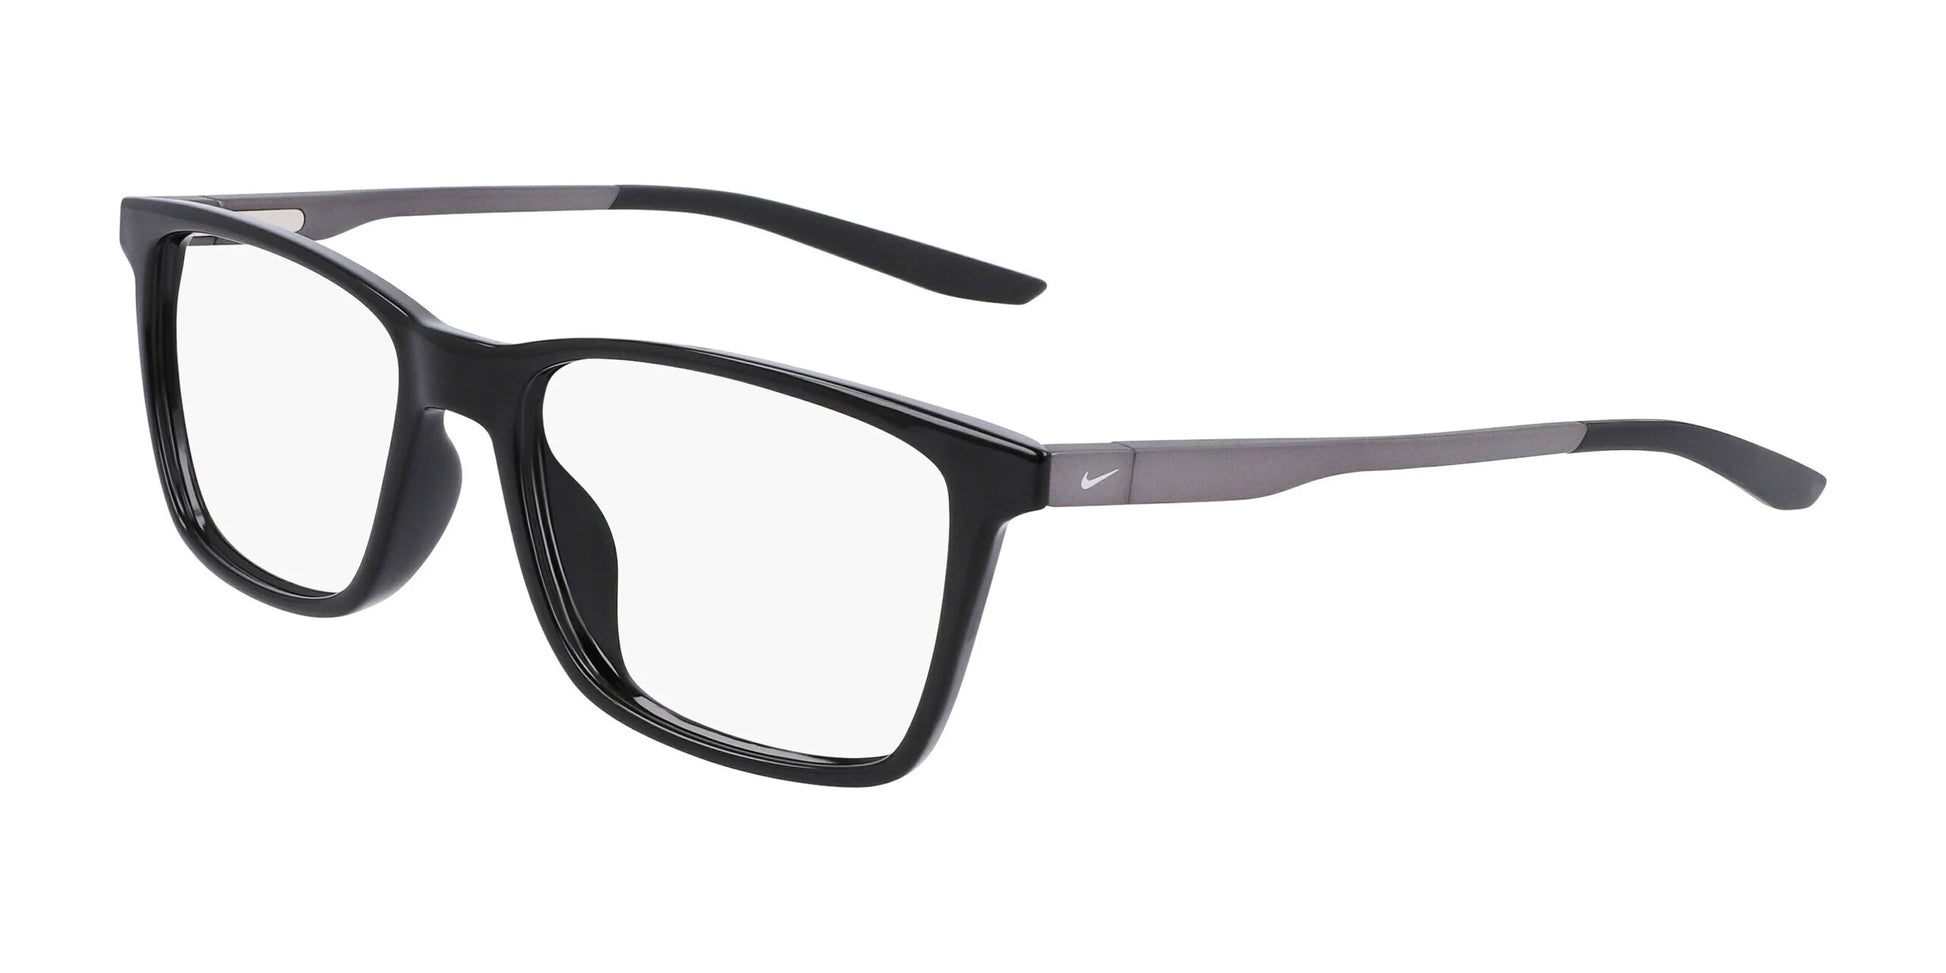 Nike 7286 Eyeglasses Crystal Black